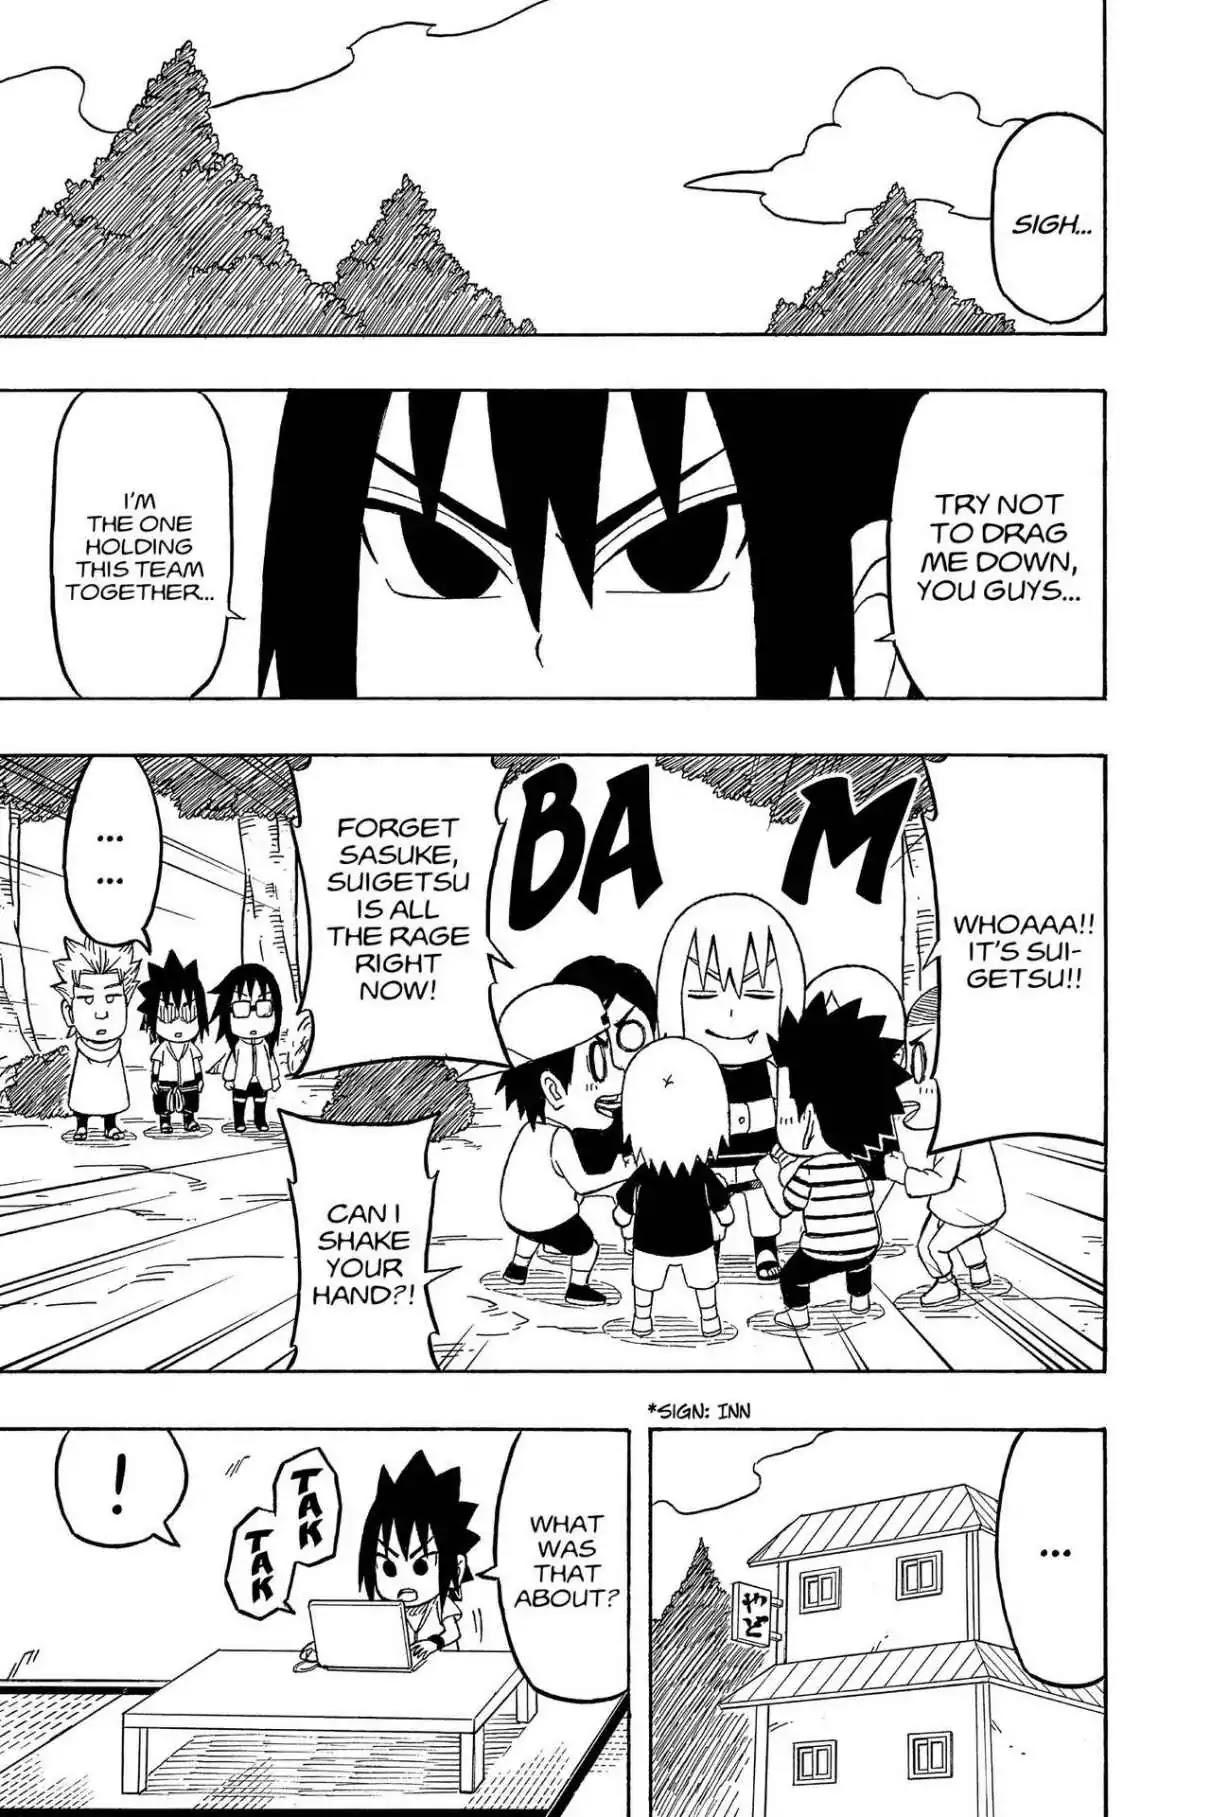 Bague Naruto Sasuke Mangekyou Sharingan - Manga city